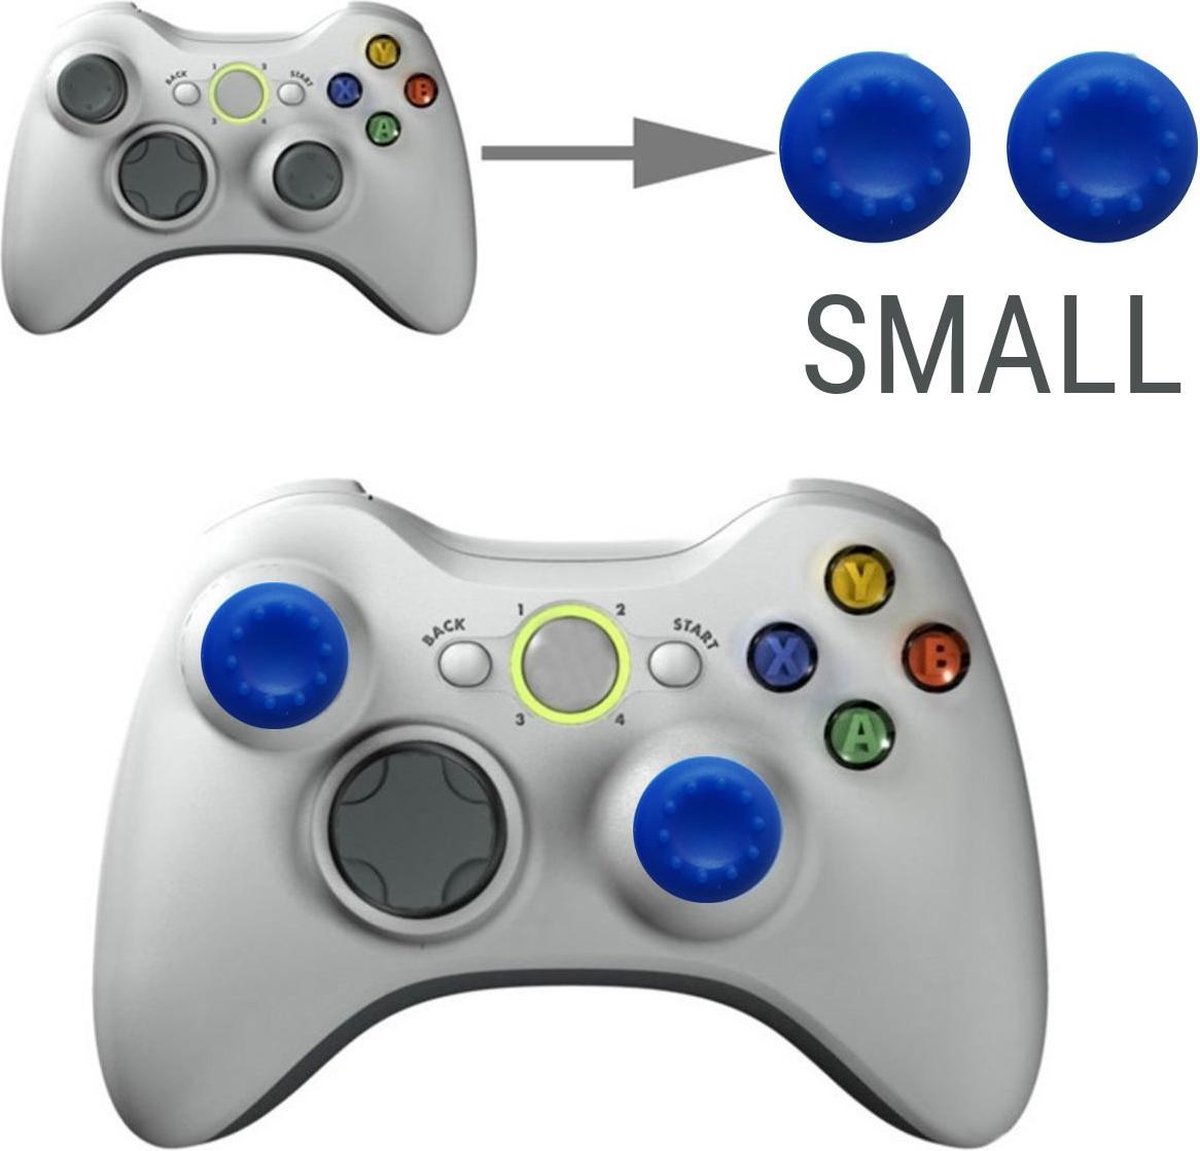 Thumb grips - Controller Thumbgrips - Joystick Cap - Thumbsticks - Thumb Grip Cap geschikt voor Switch, Switch Pro, PS4 en Xbox - 2 stuks Klein 10 dots extra grip Blauw